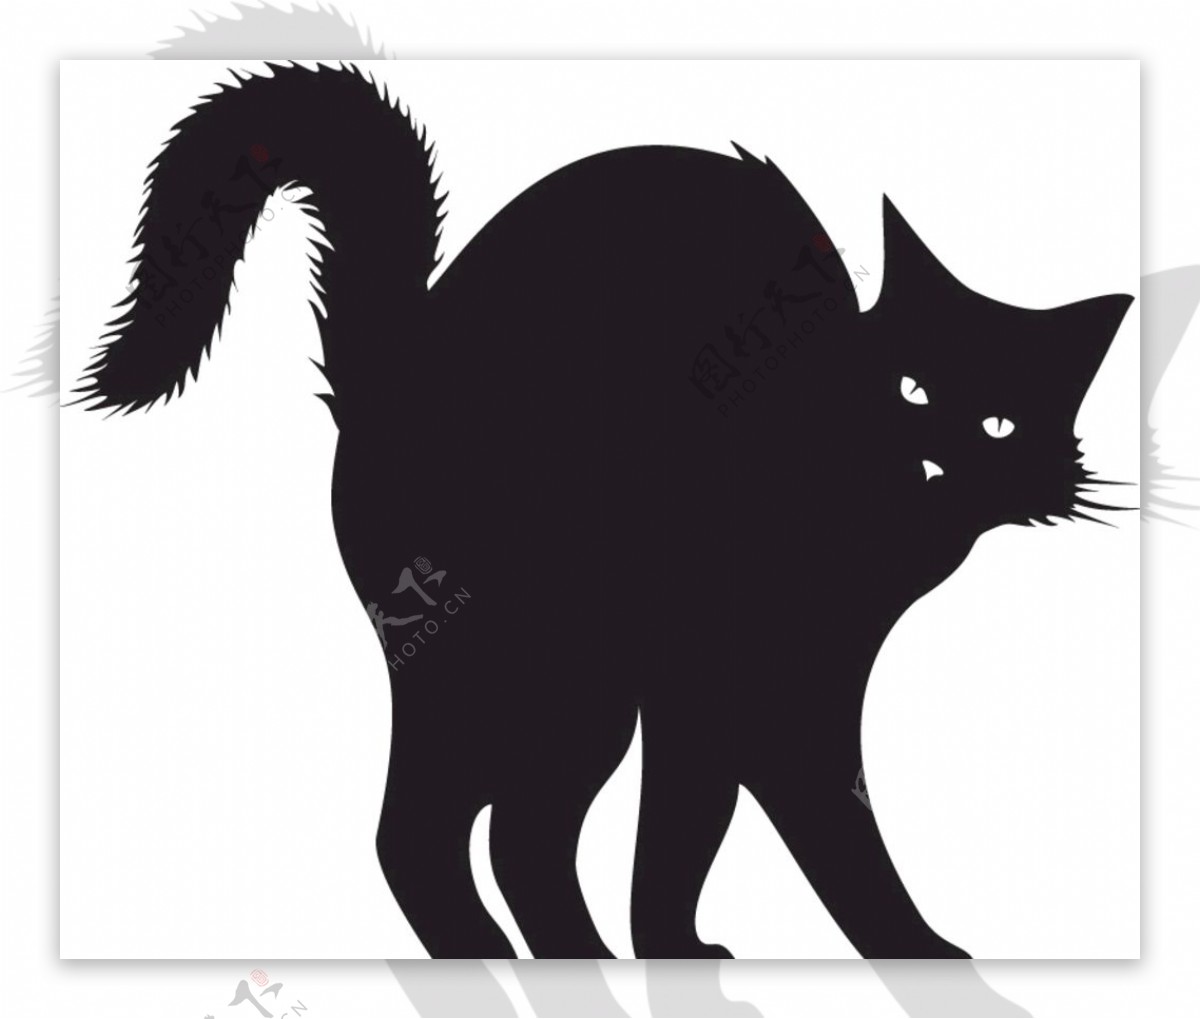 黑猫动物矢量EPS可爱